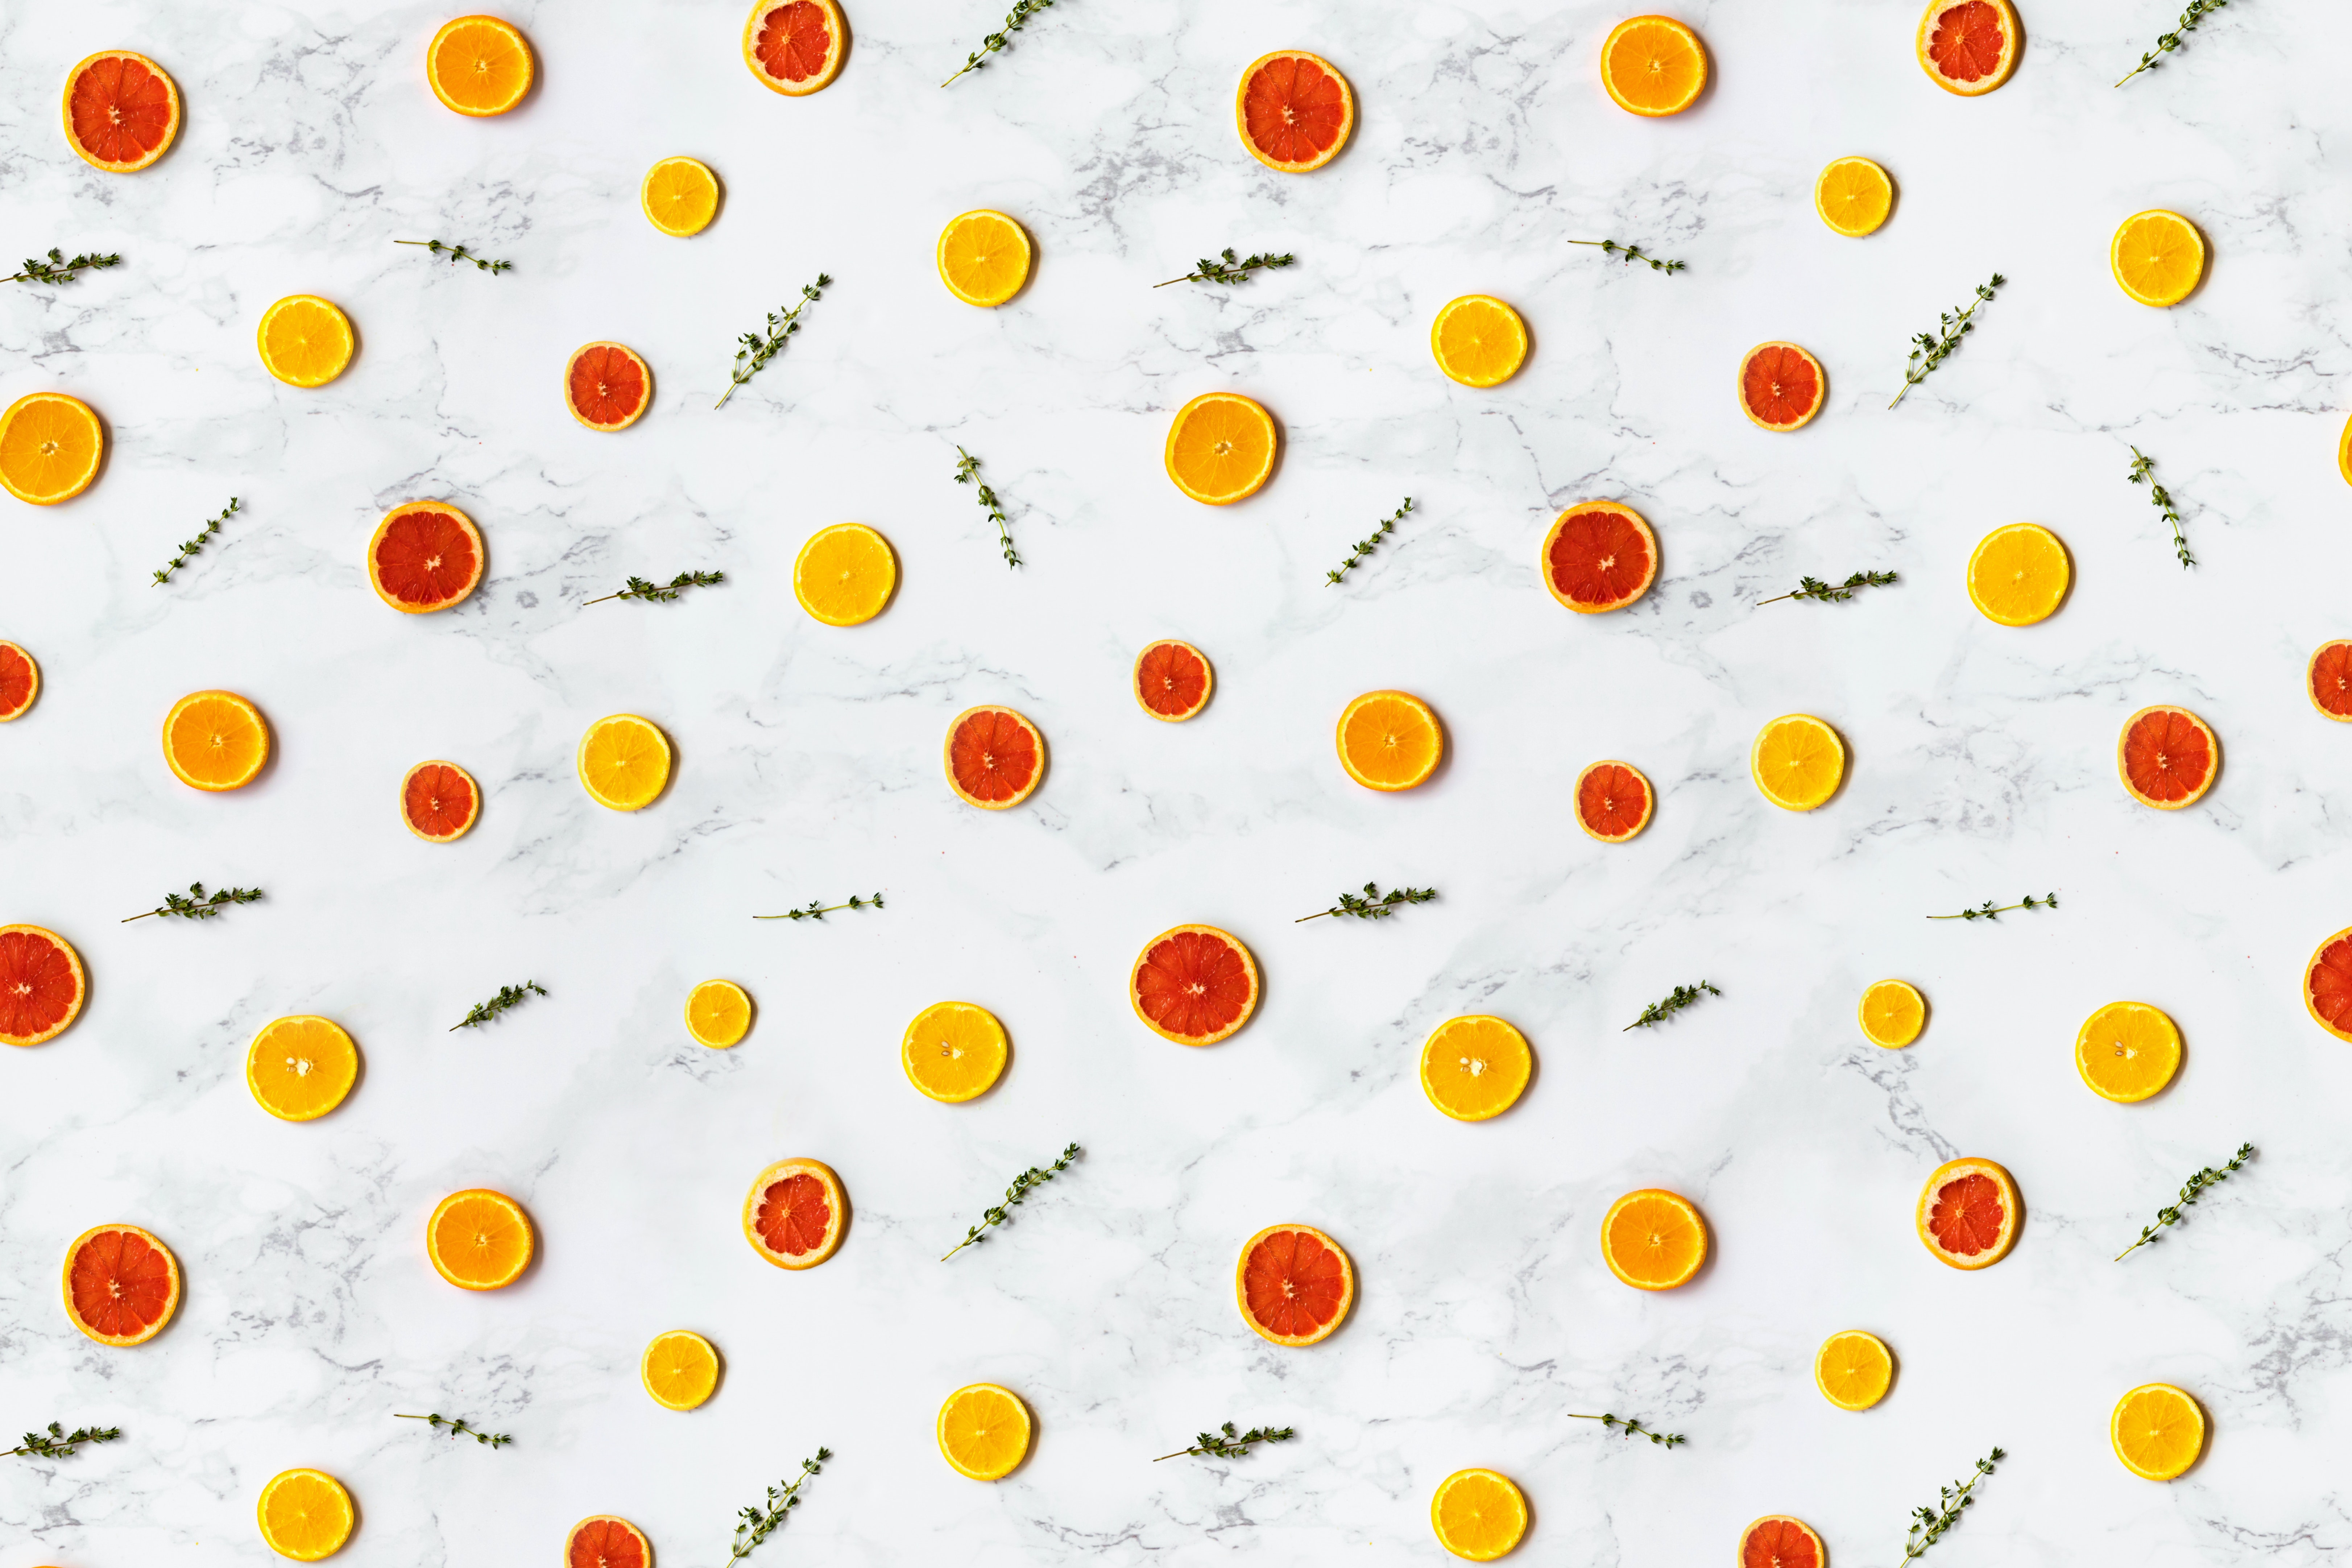 La imagen muestra un estampado regular de rodajas de frutas cítricas naranjas y amarillas.